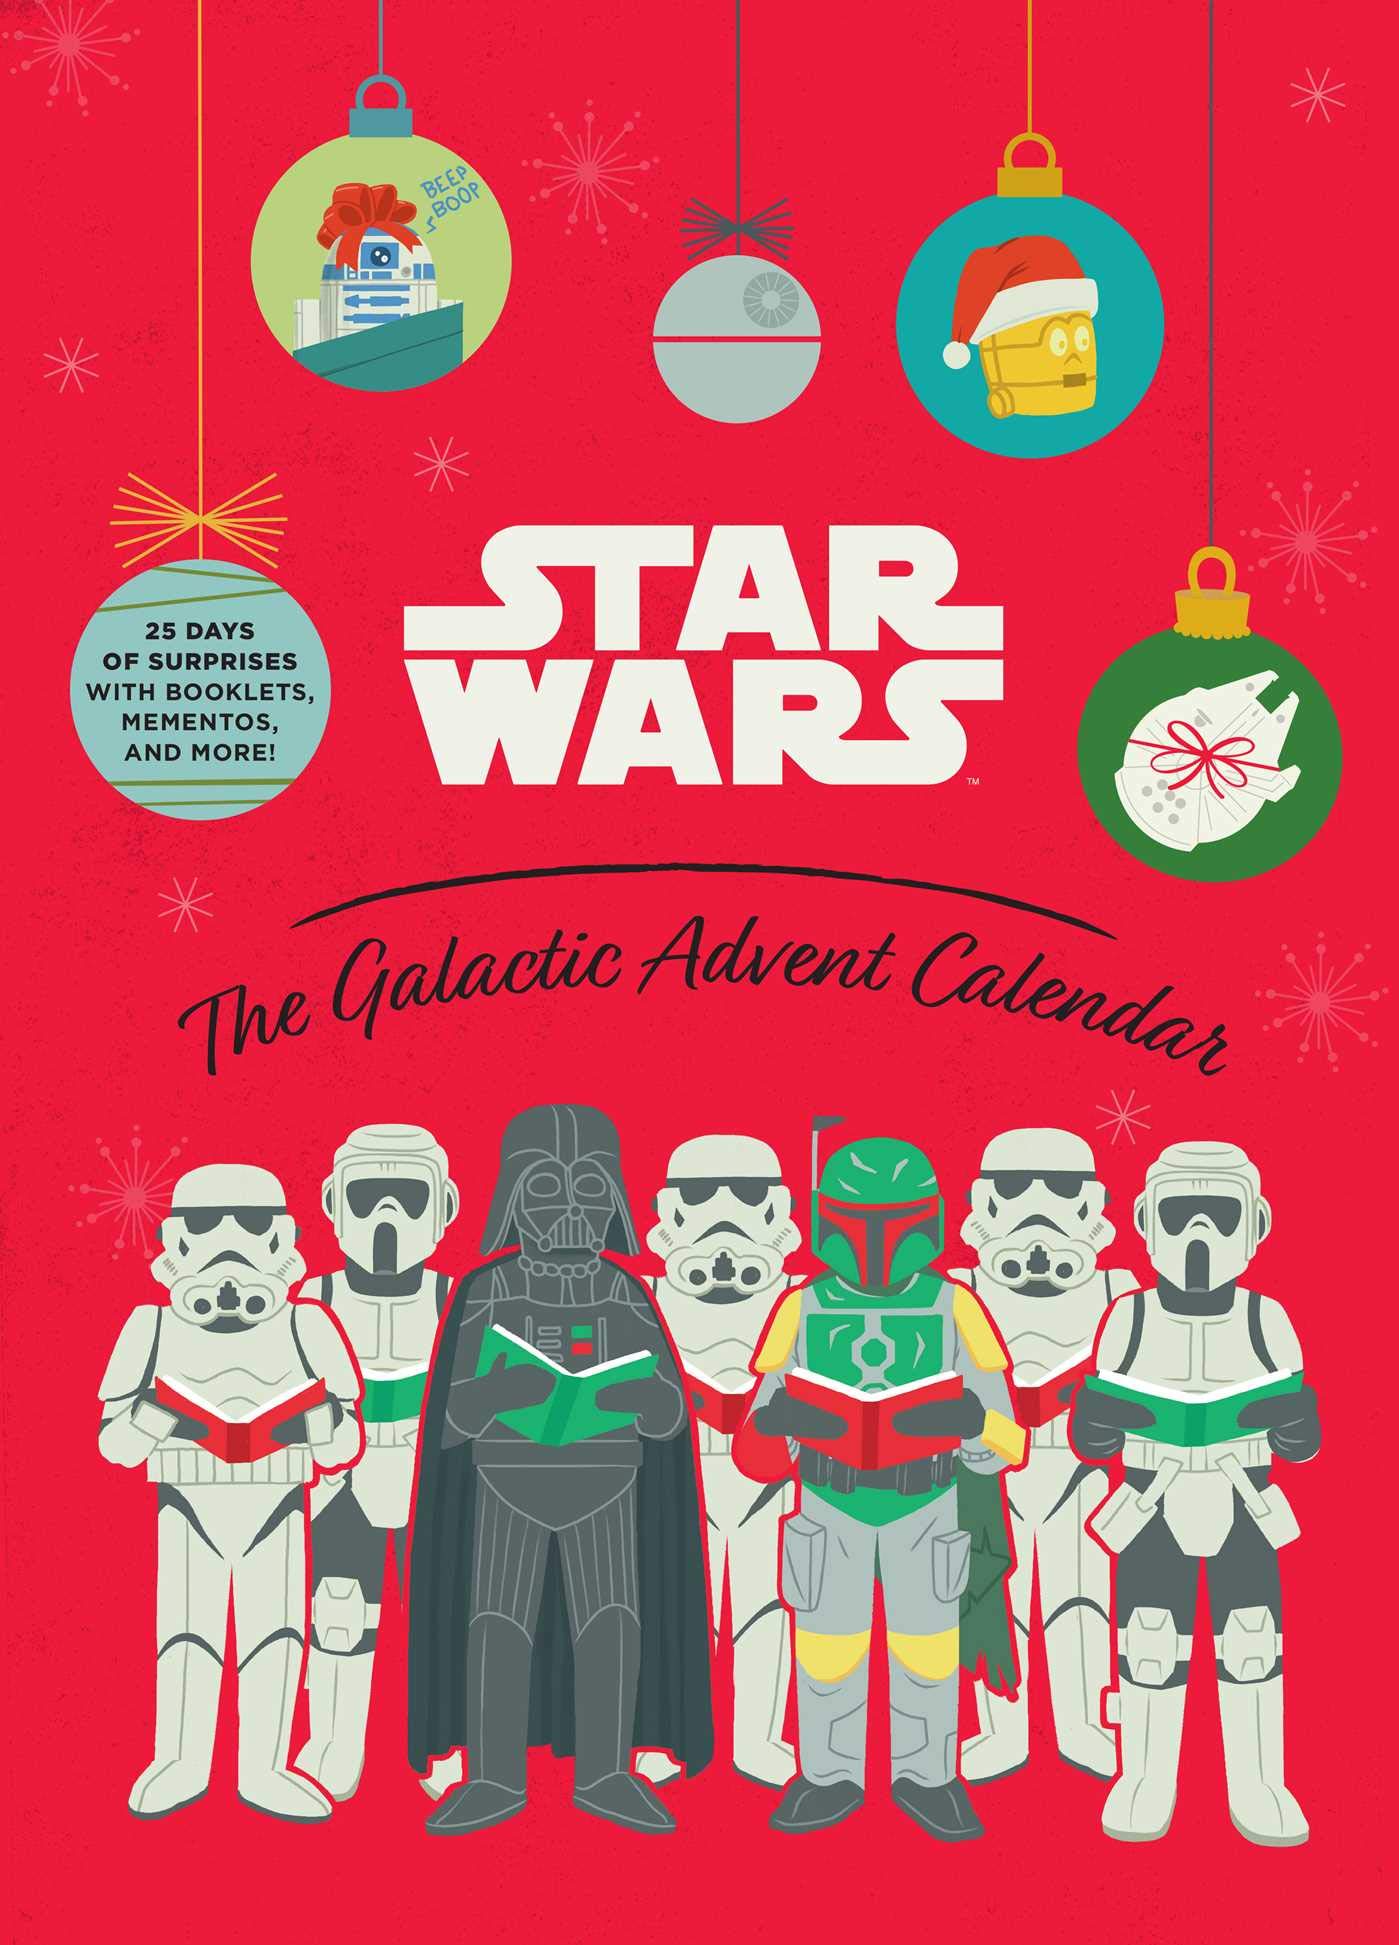 Star Wars the Galactic Adventskalender